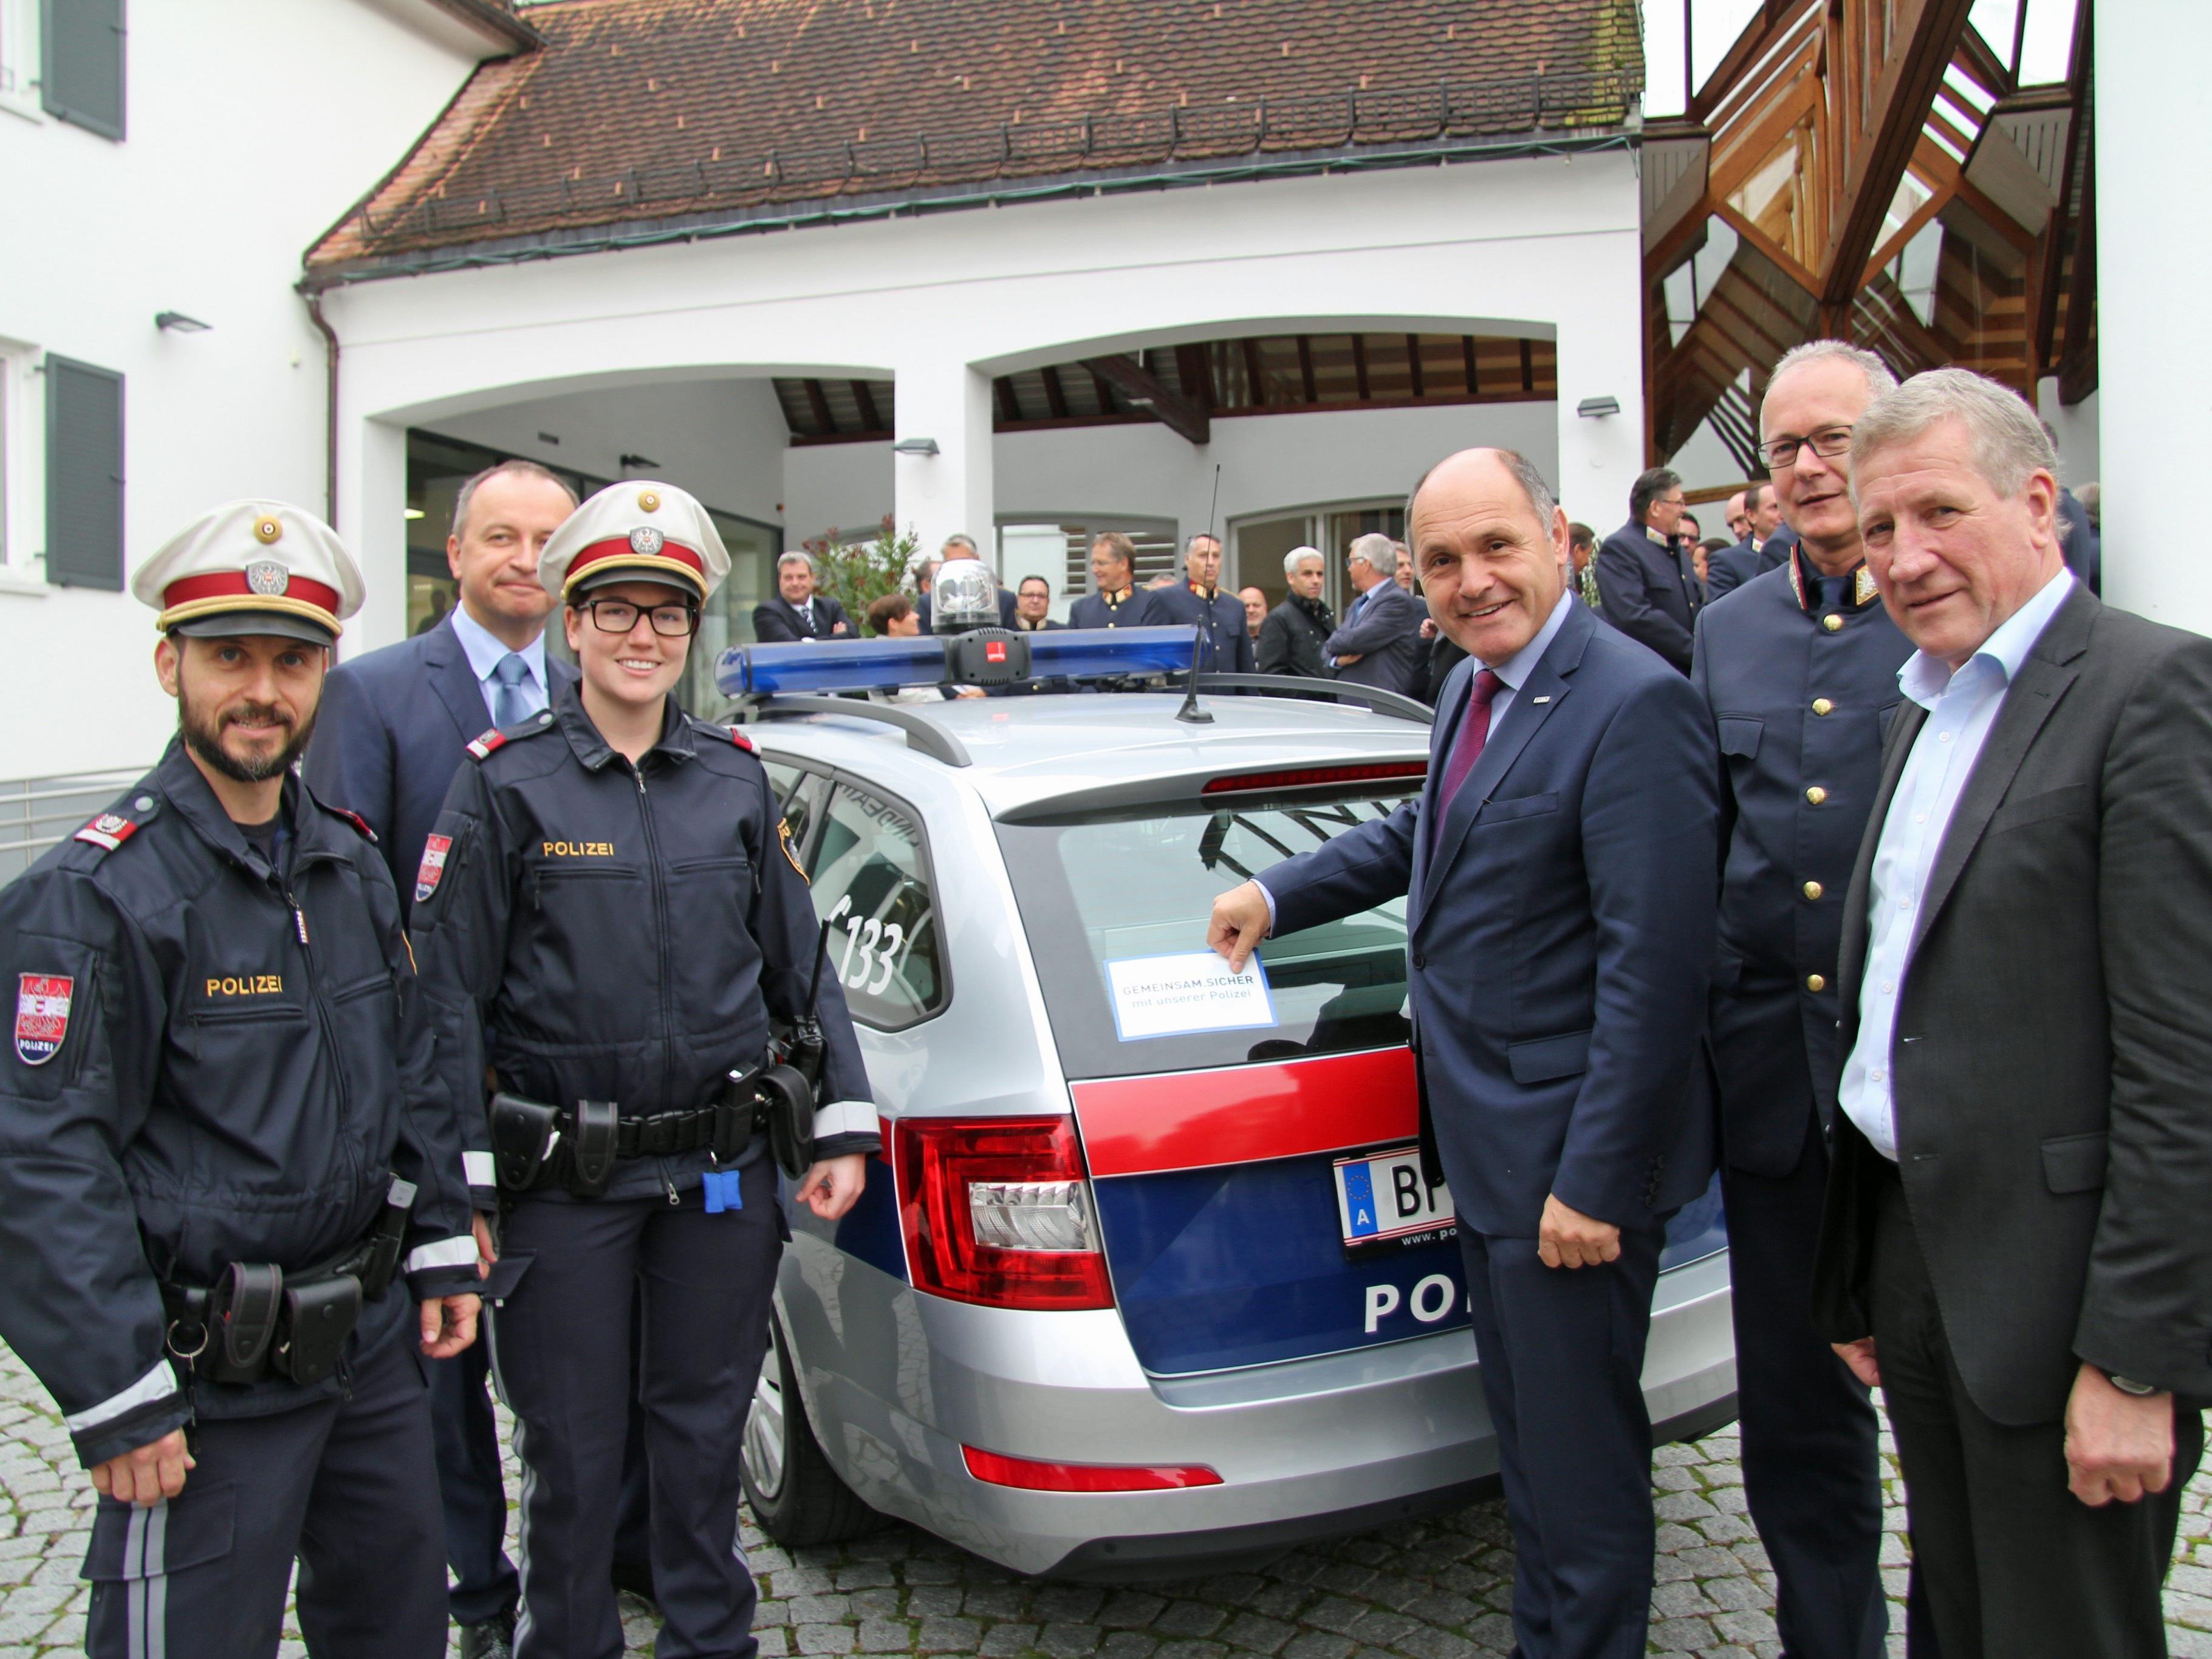 Die Polizei will künftig verstärkt auf Augenhöhe mit Bürgern und Gemeinde kooperieren.